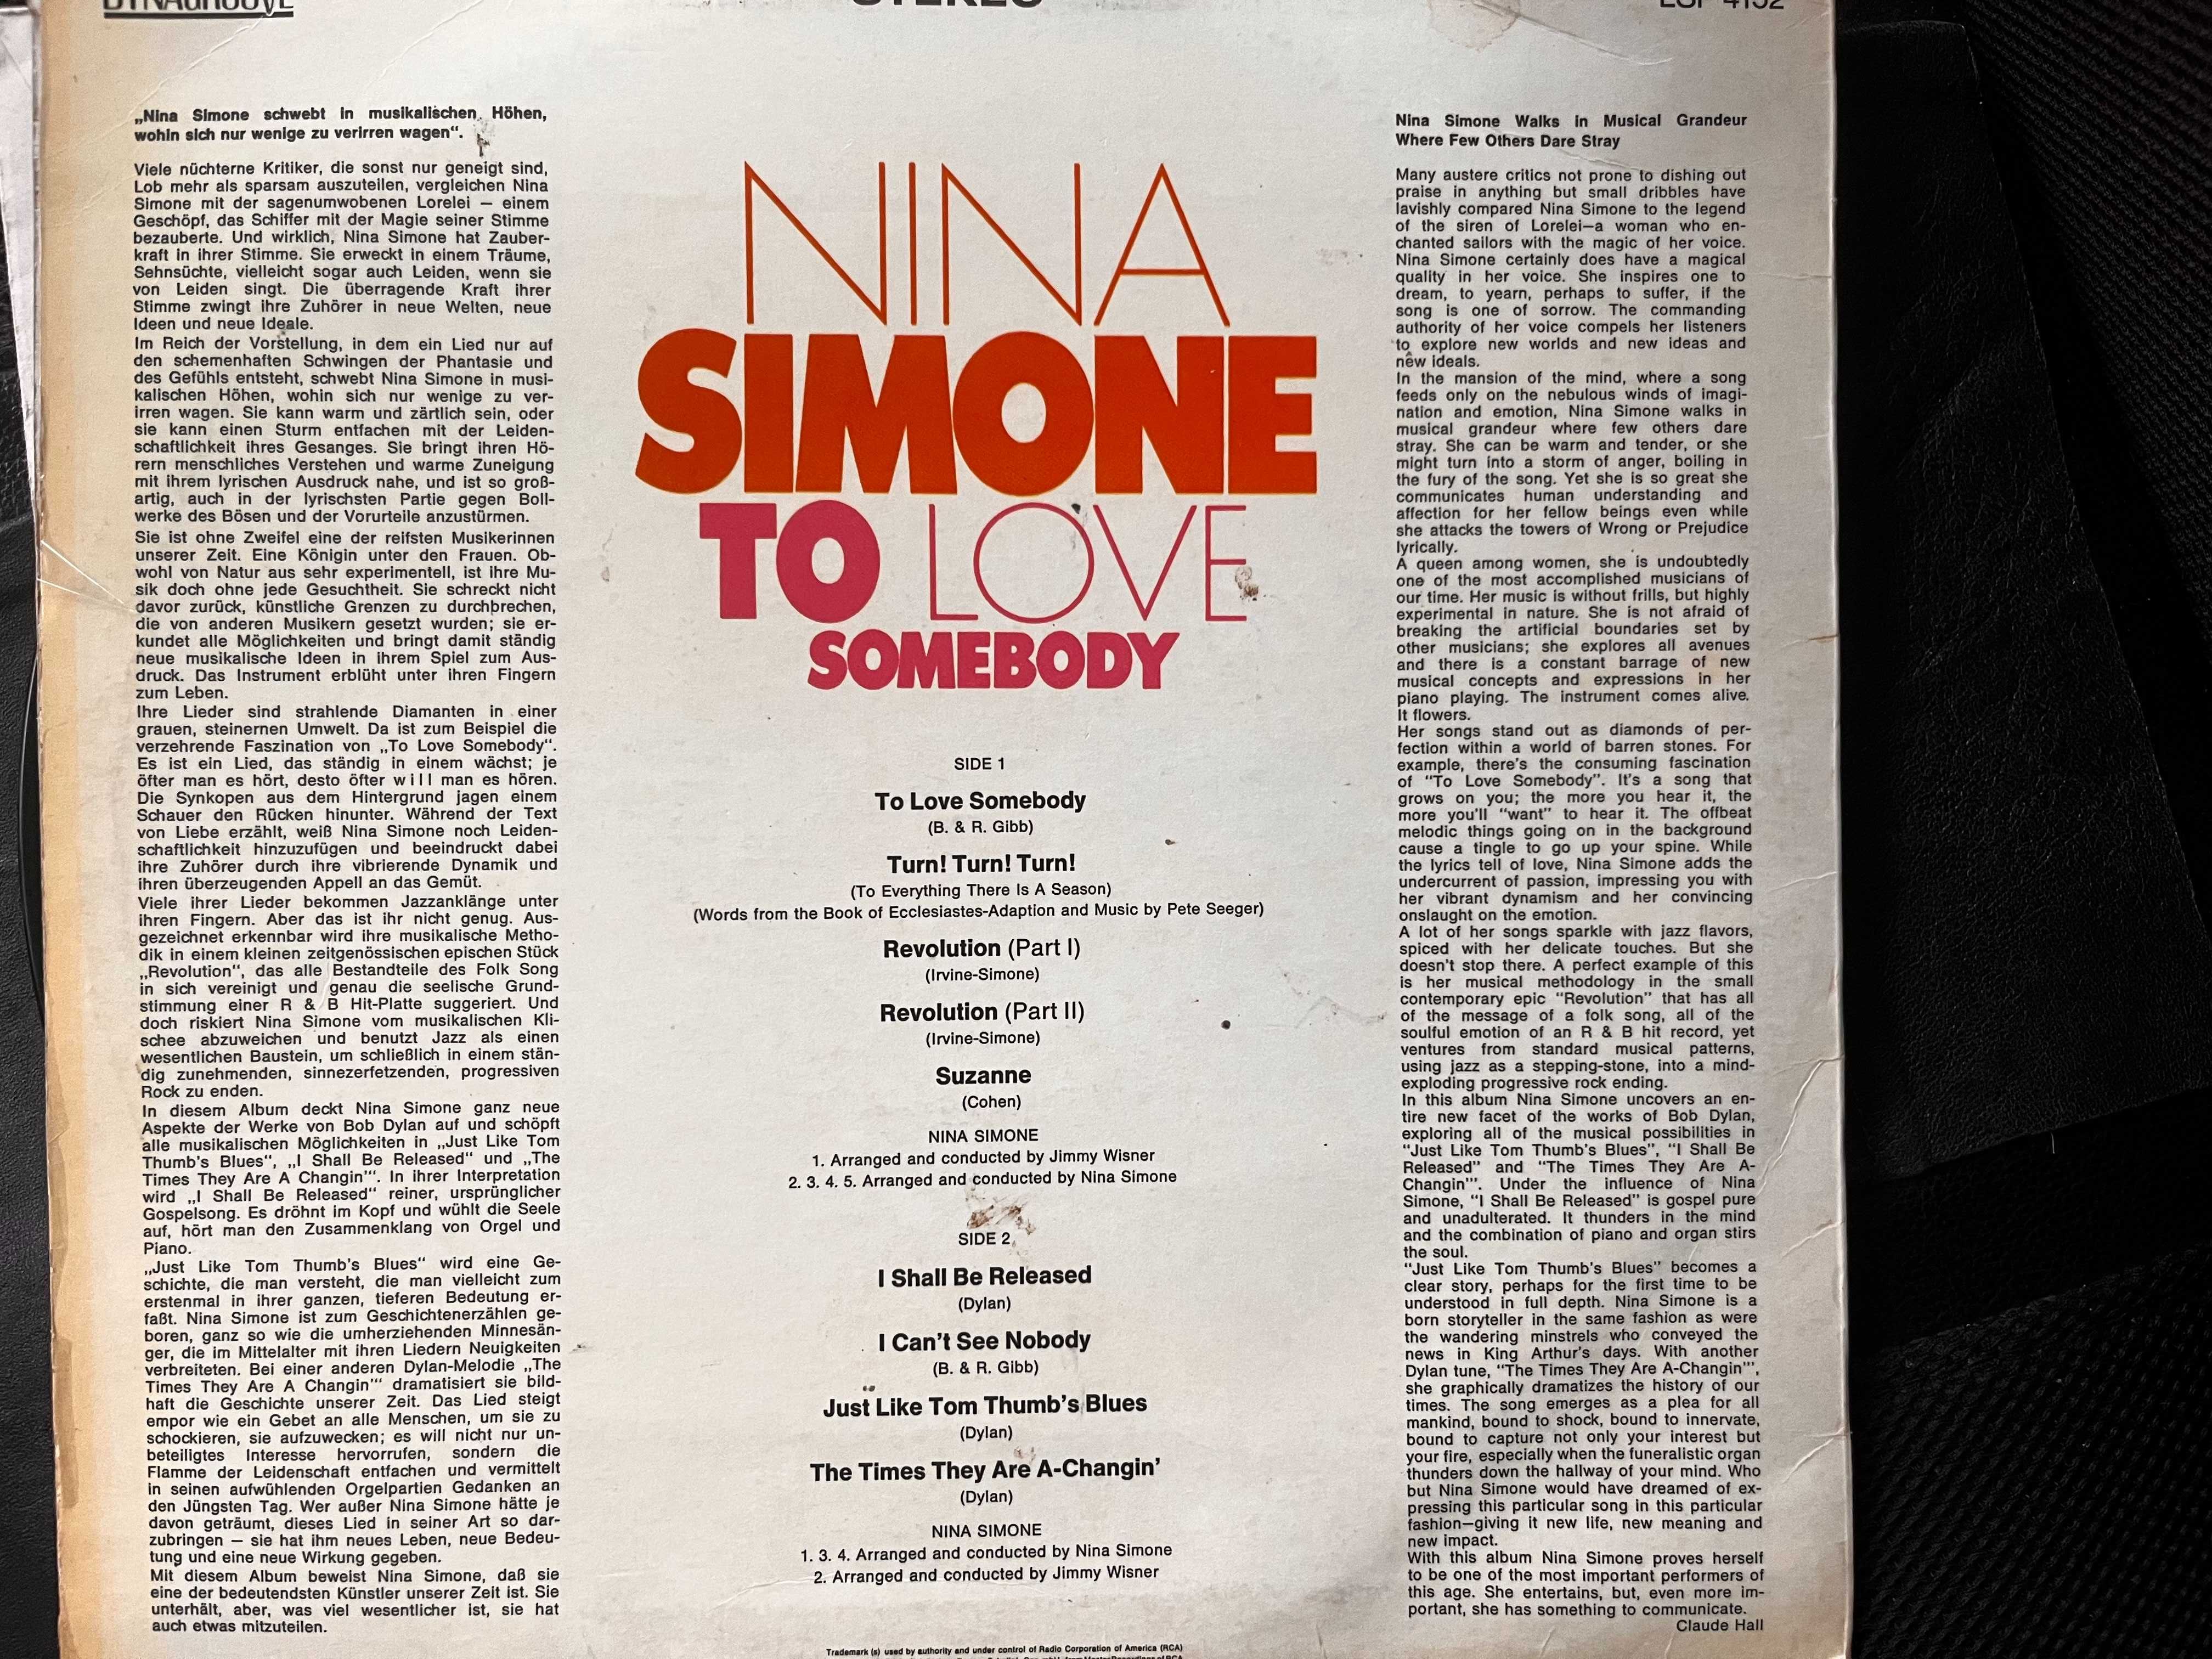 Nina Simone плоча и дискове